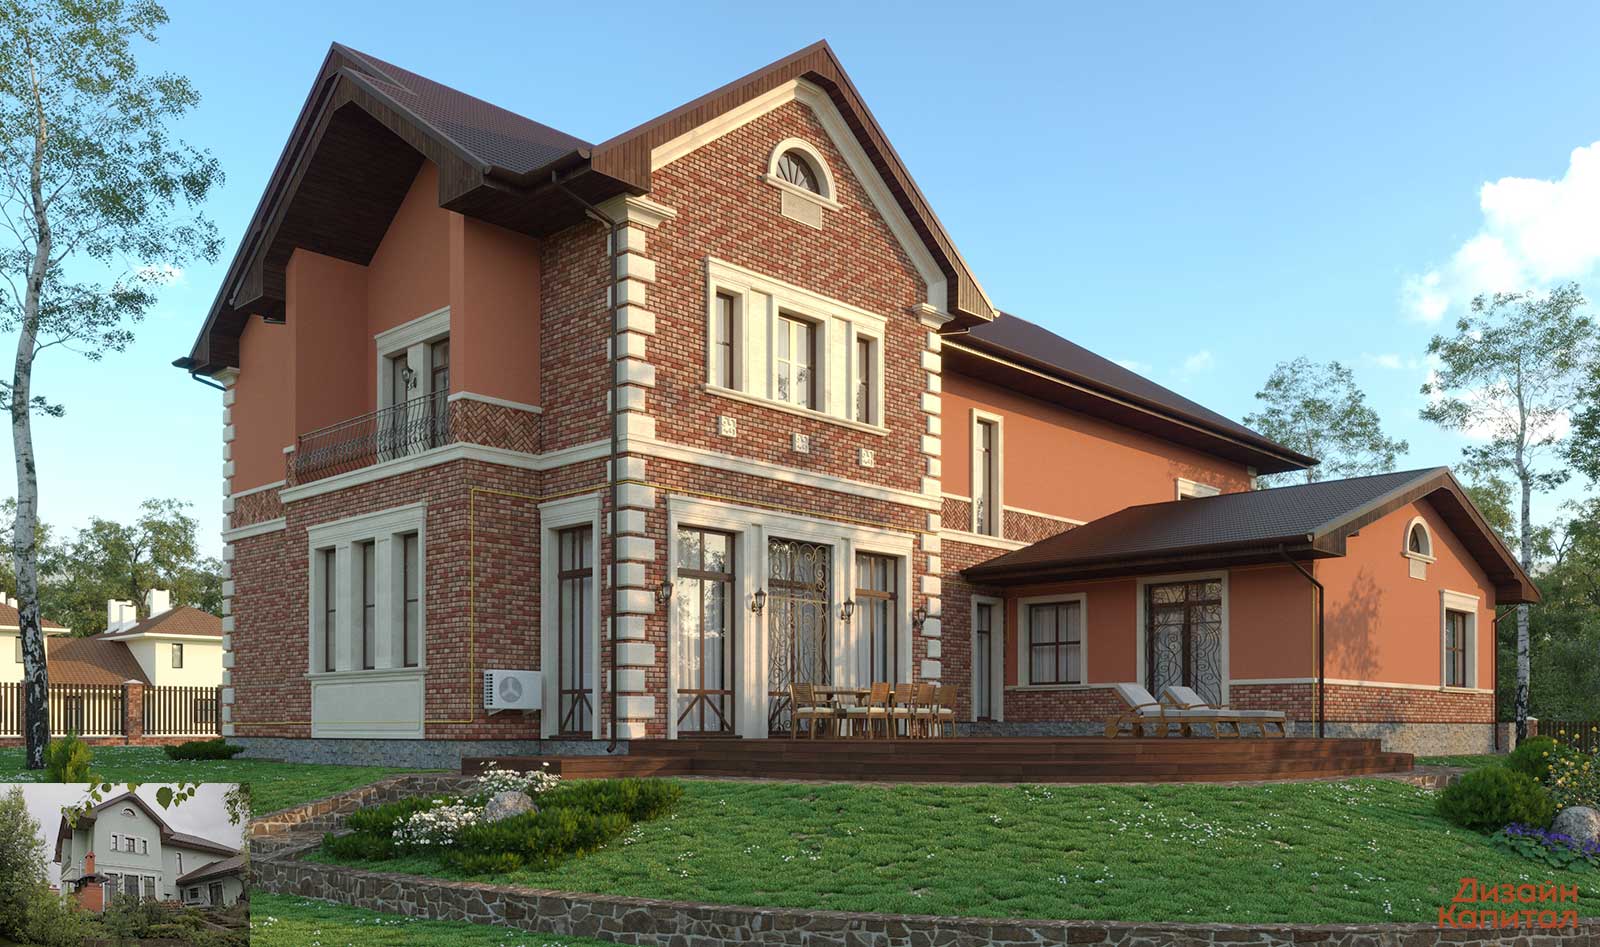 Marsala house facade. Stucco and dark brick, with Bavarian masonry